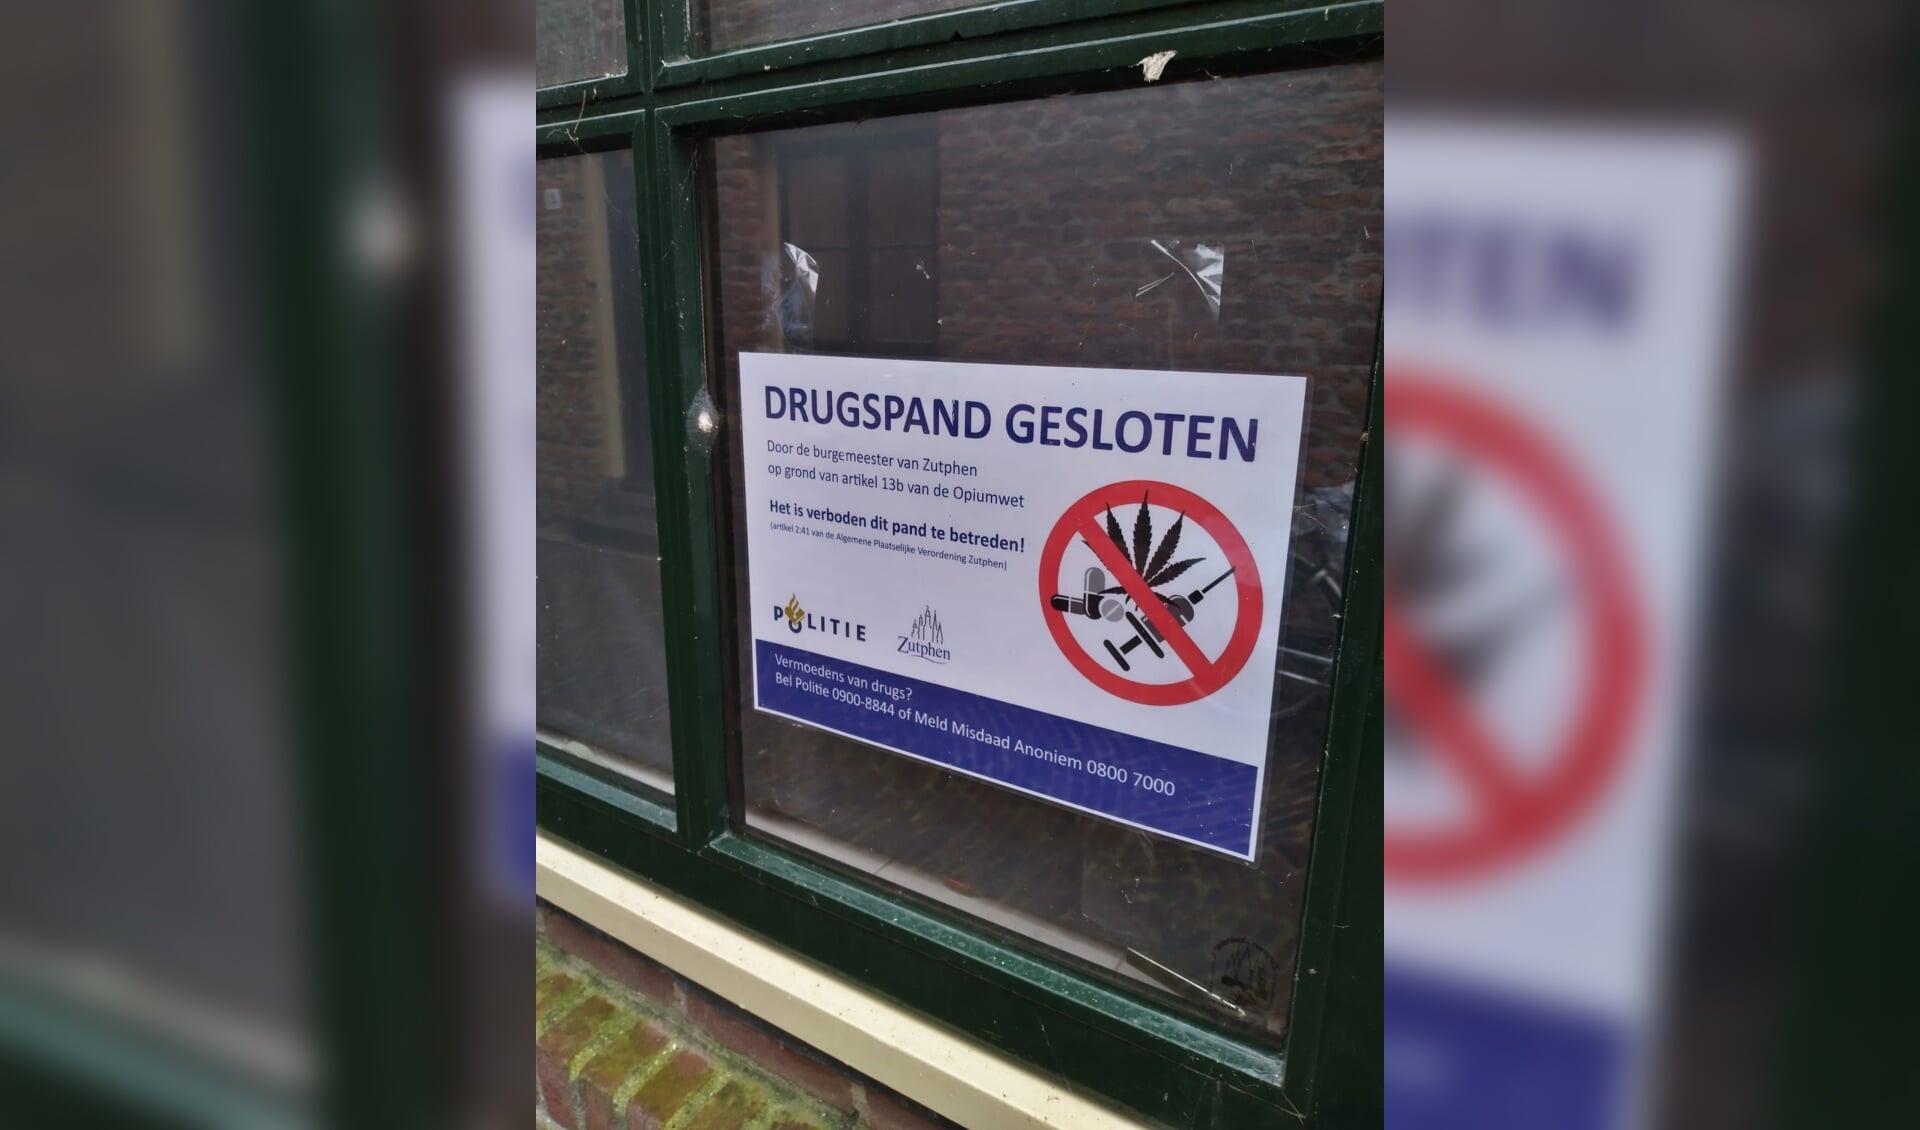 Sluiting drugspand. Foto: gemeente Zutphen